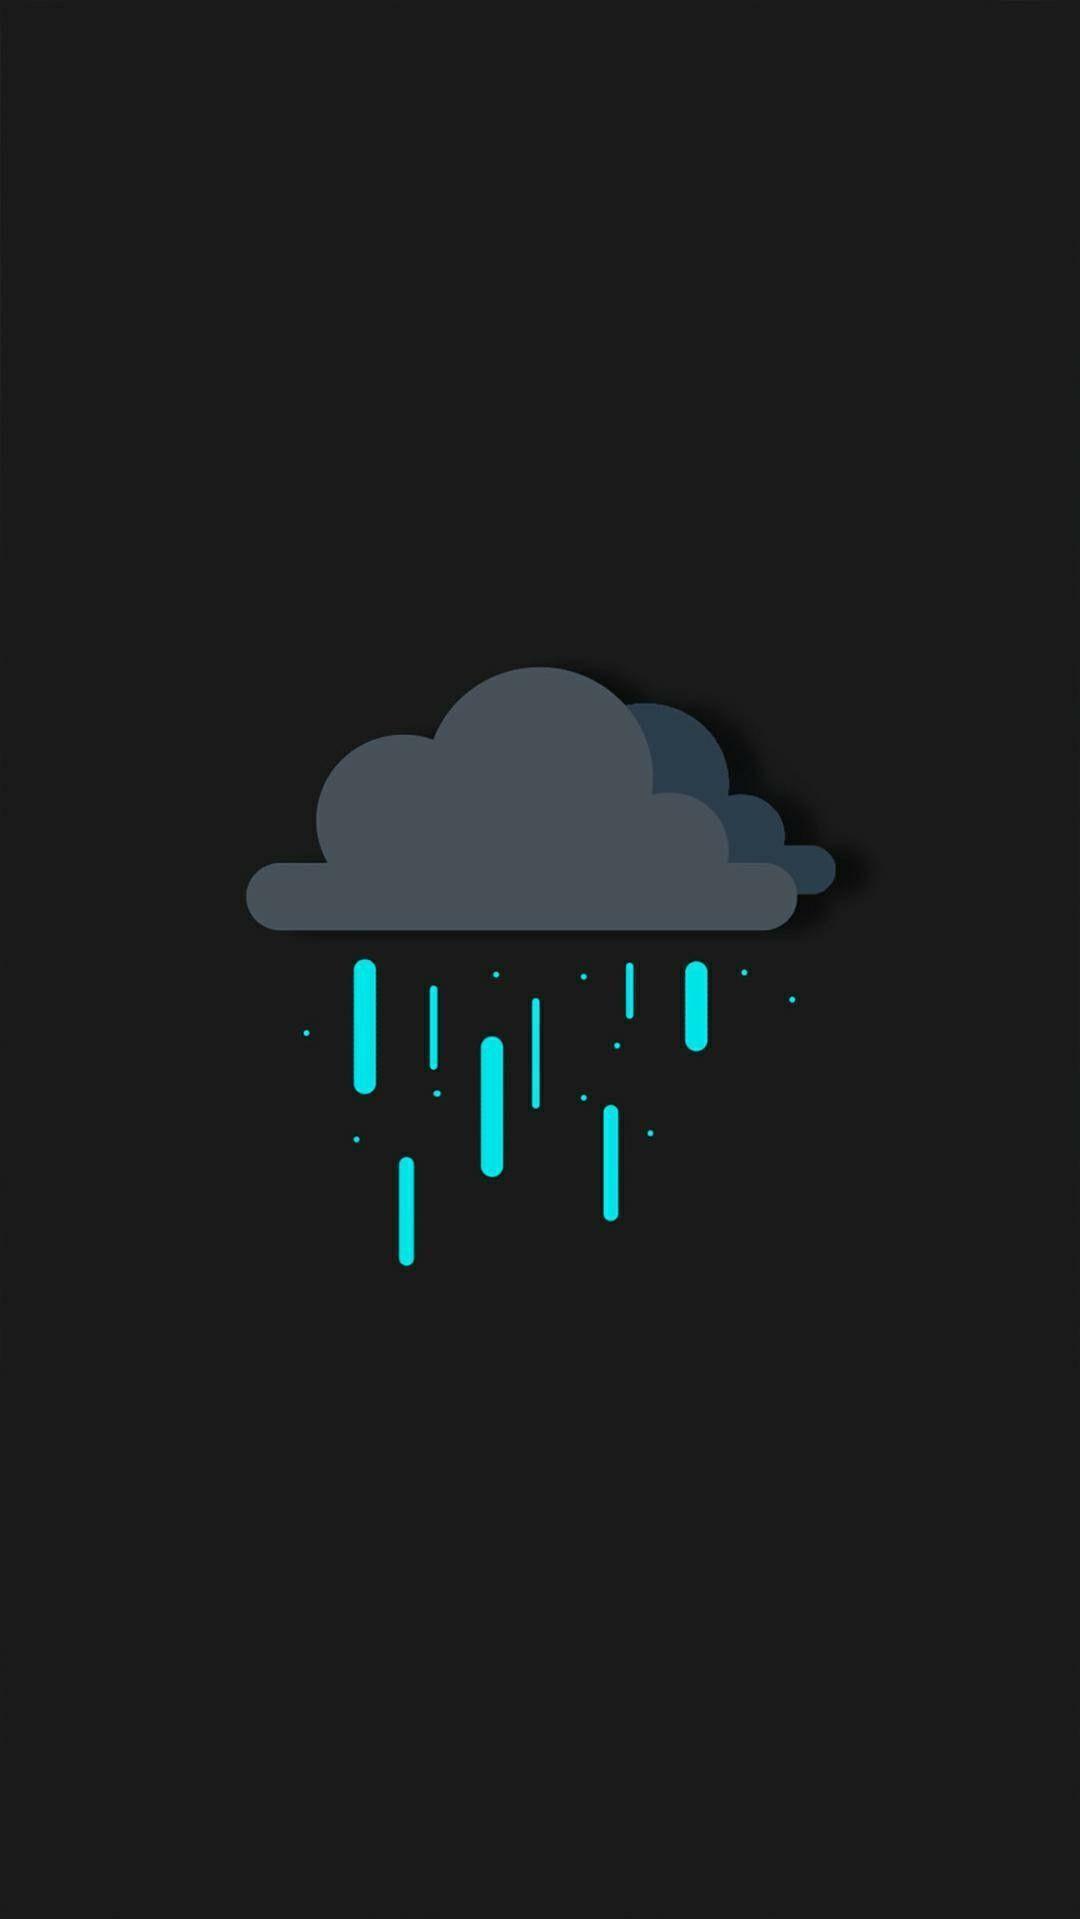 Digital Rain Wallpapers - Top Free Digital Rain Backgrounds